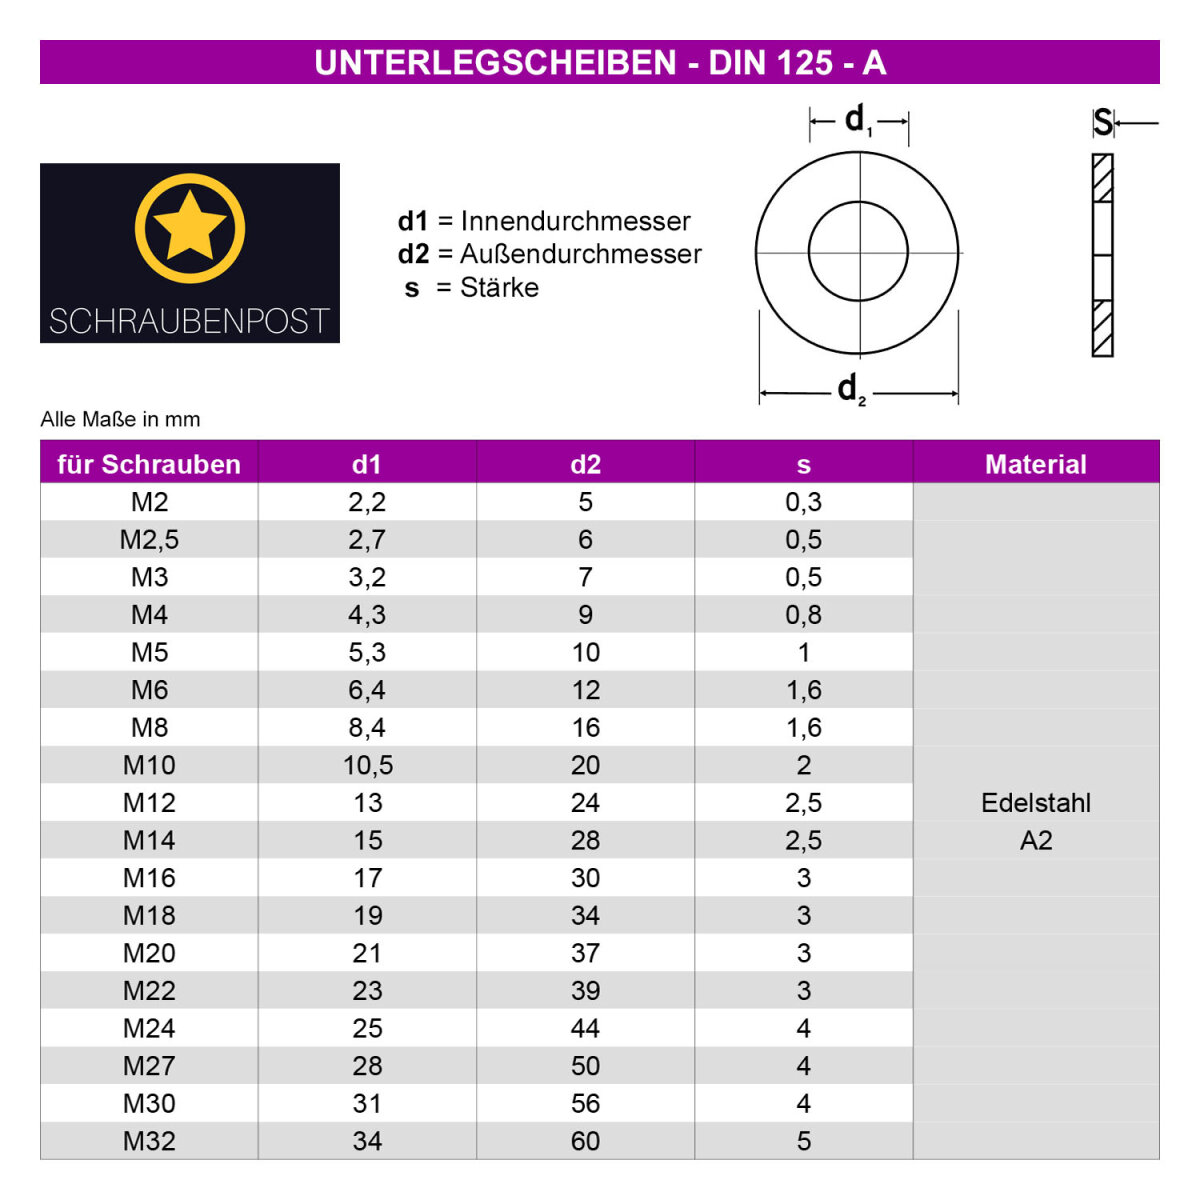 1x Unterlegscheibe M8 (DIN 125 - Form A, VZ) - NormReich, 0,02 €